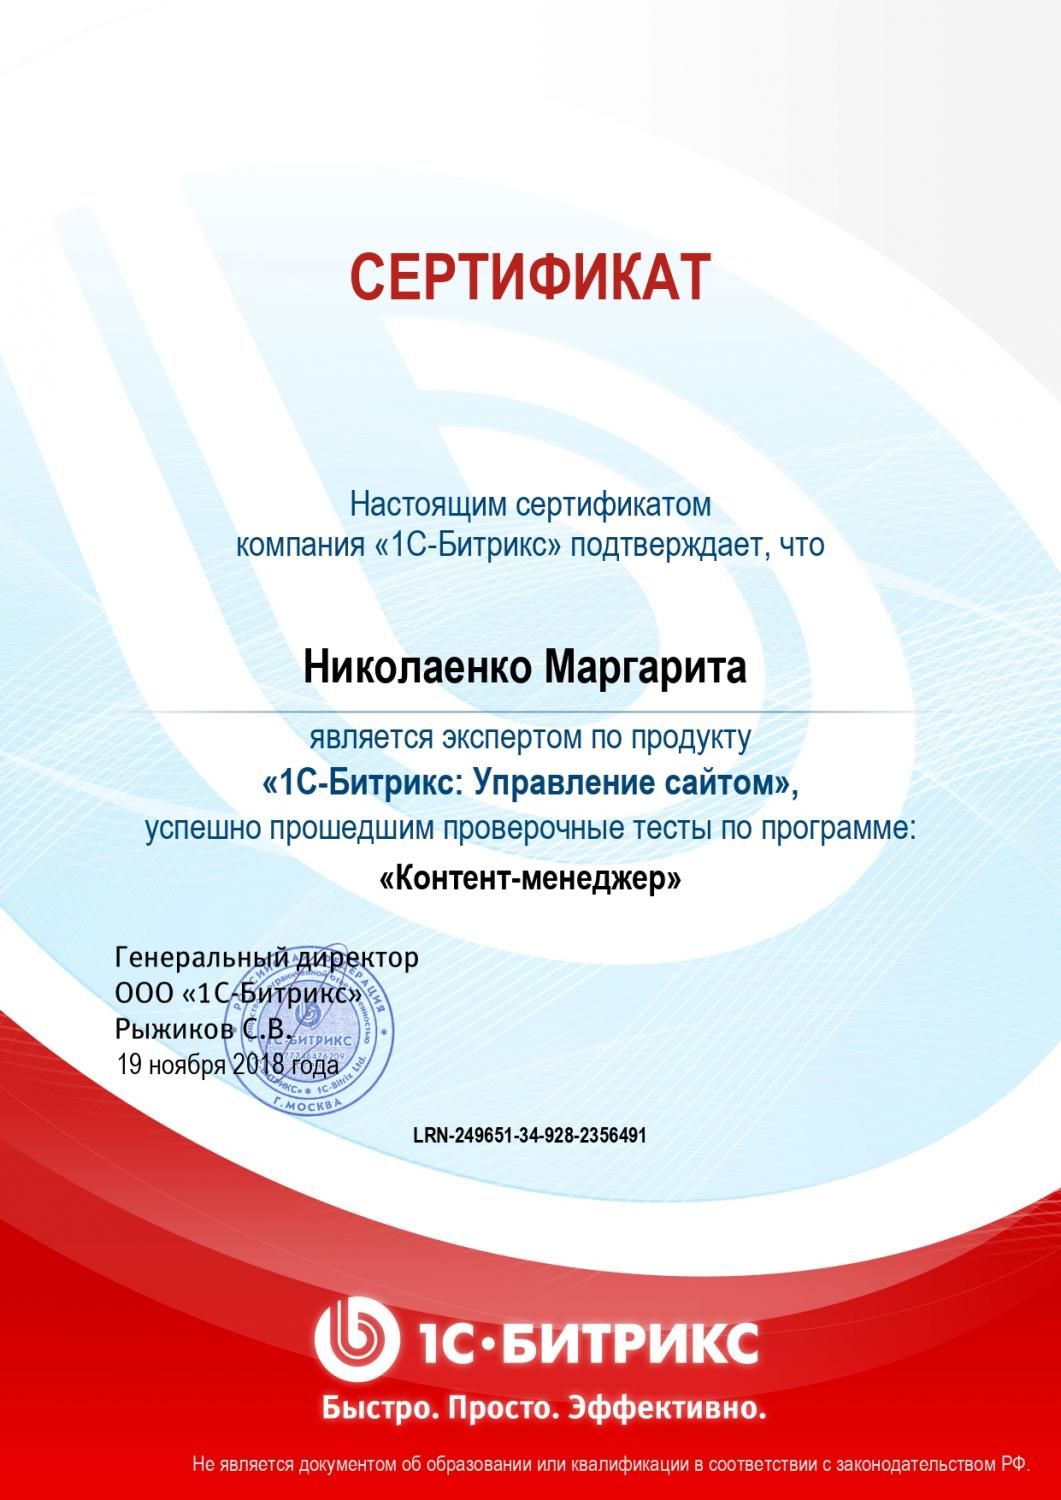 Сертификат эксперта по программе "Контент-менеджер" - Николаенко М. в Севастополя